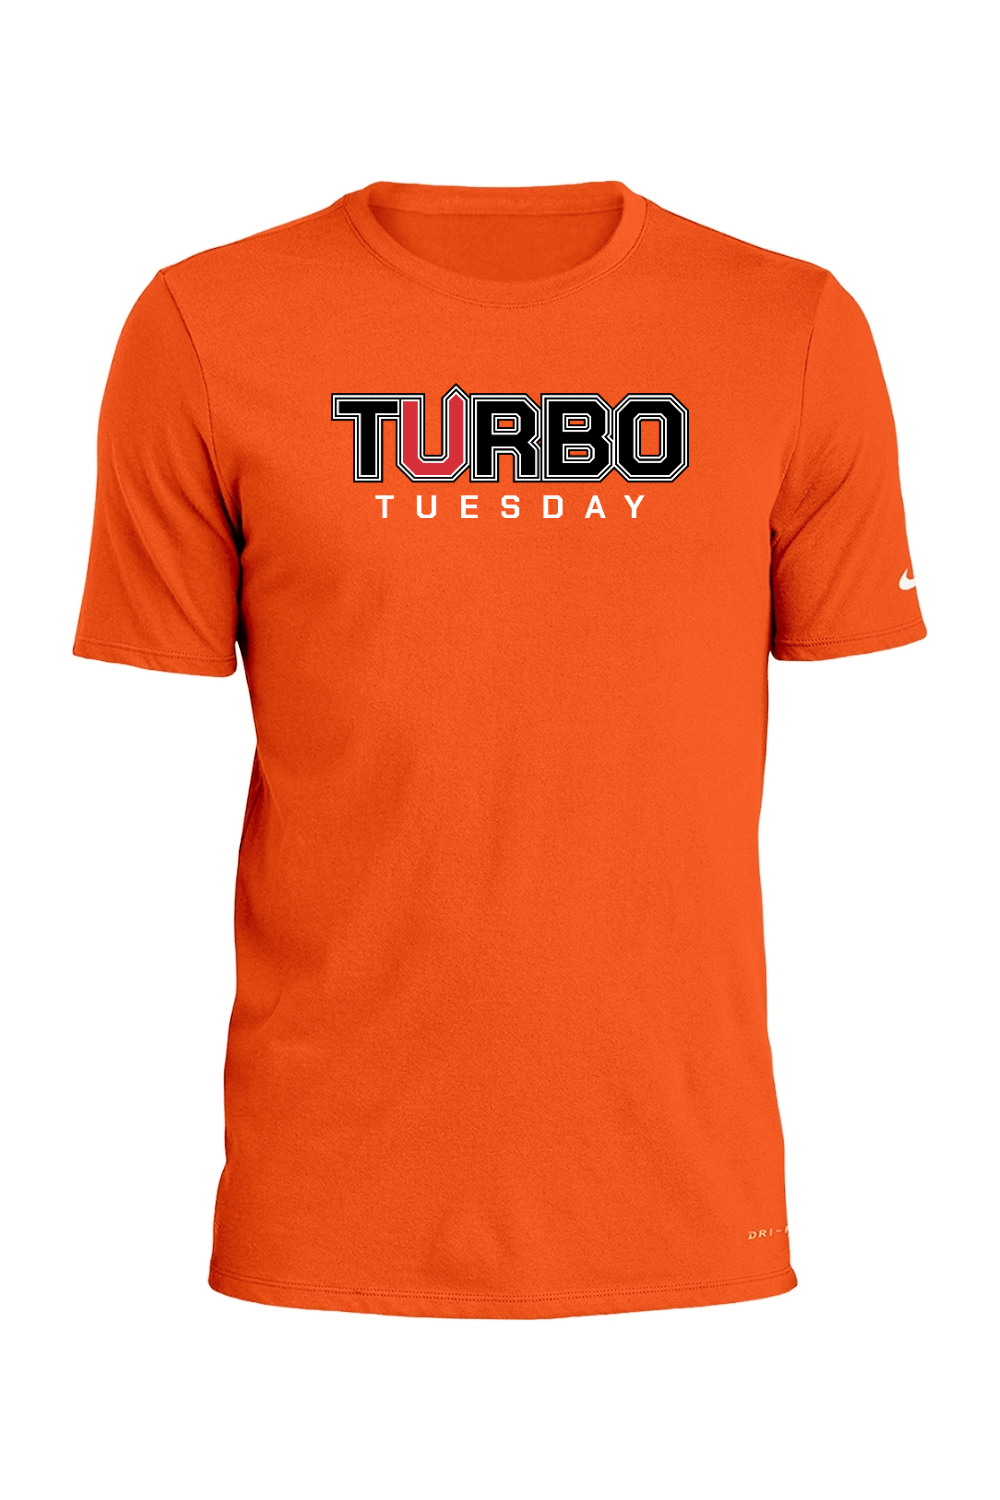 Turbo Tuesday Nike Dri-FIT Cotton/Poly Tee